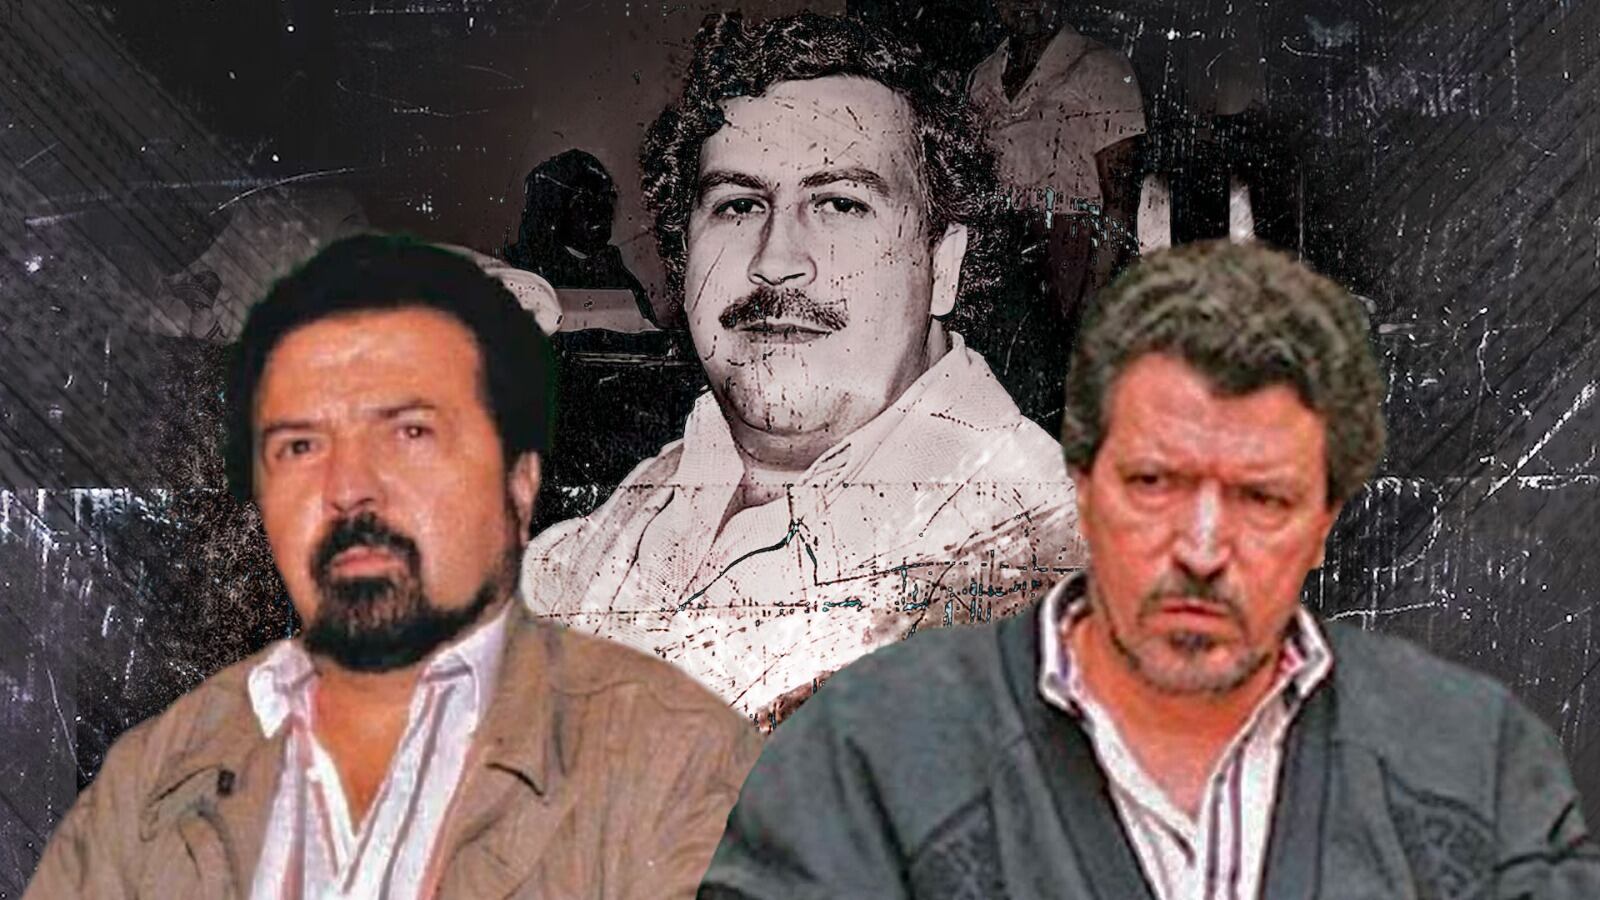 Los hermanos Rodríguez Orejuela, líderes del cartel de Cali y encarnizados enemigos de Pablo Escobar en el negocio del narcotráfico, obligaron a la viuda a ceder parte de la riqueza del líder del Cartel de Medellín a cambio de su vida - crédito Jesús Aviles/Instagram